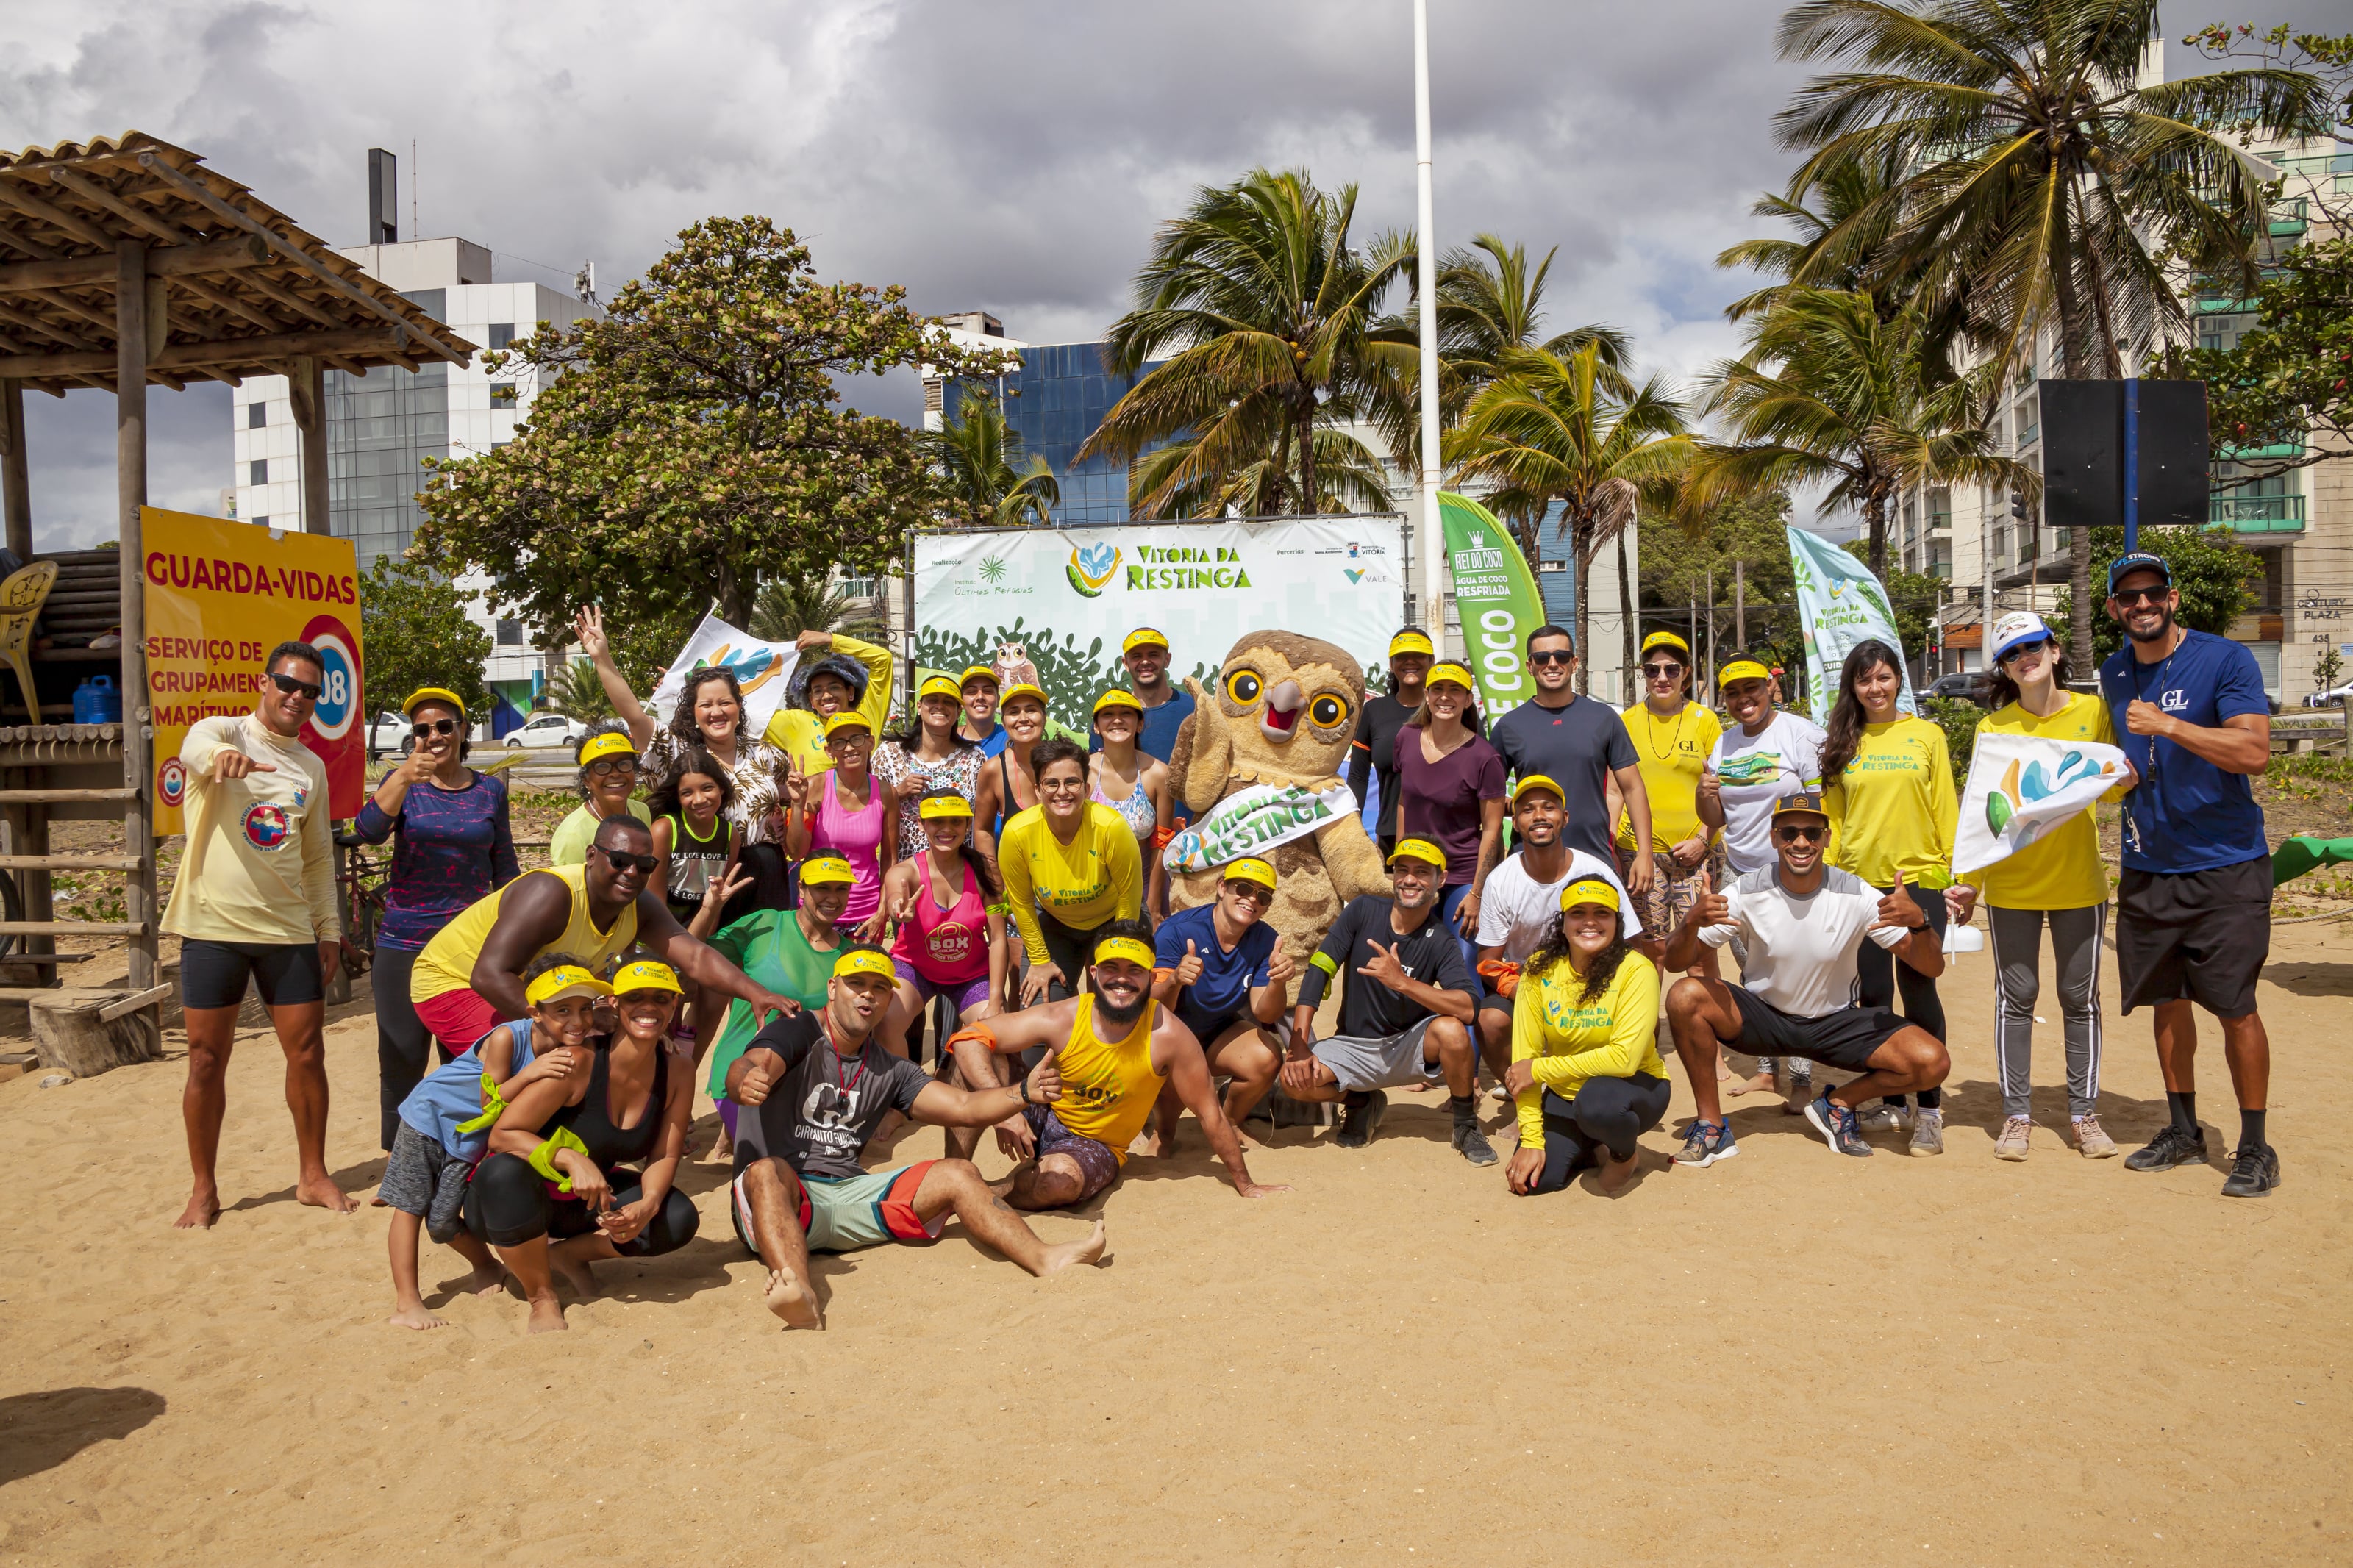 Diversas pessoas estão reunidas na areia da praia, junto de um mascote vestido de coruja. Elas estão com bonés amarelos e ao fundo há uma placa “Vitória da Restinga”